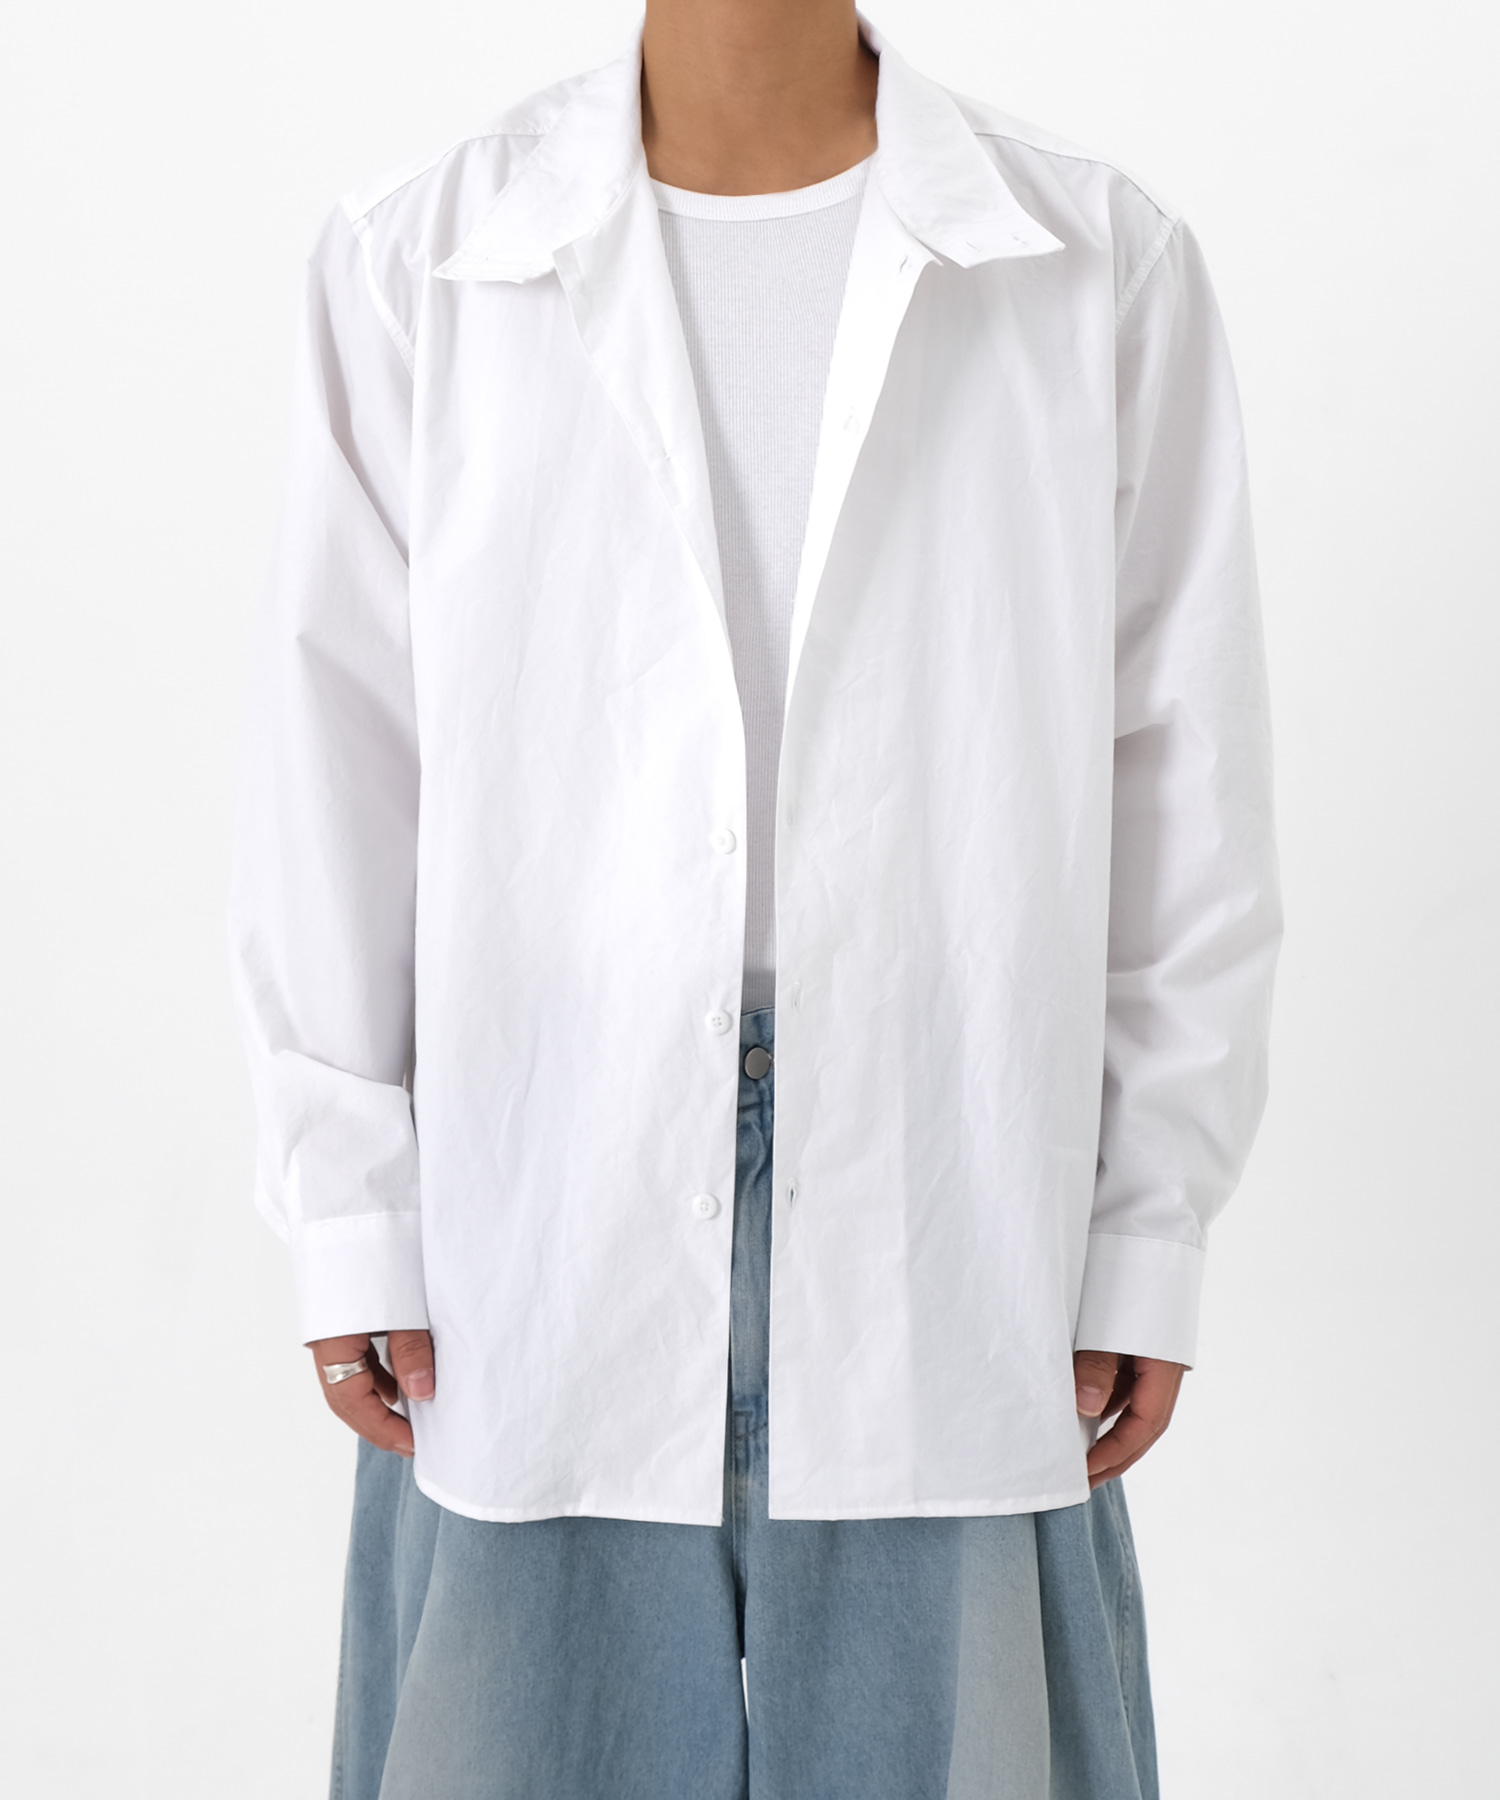 high neck shirts jacket (white)